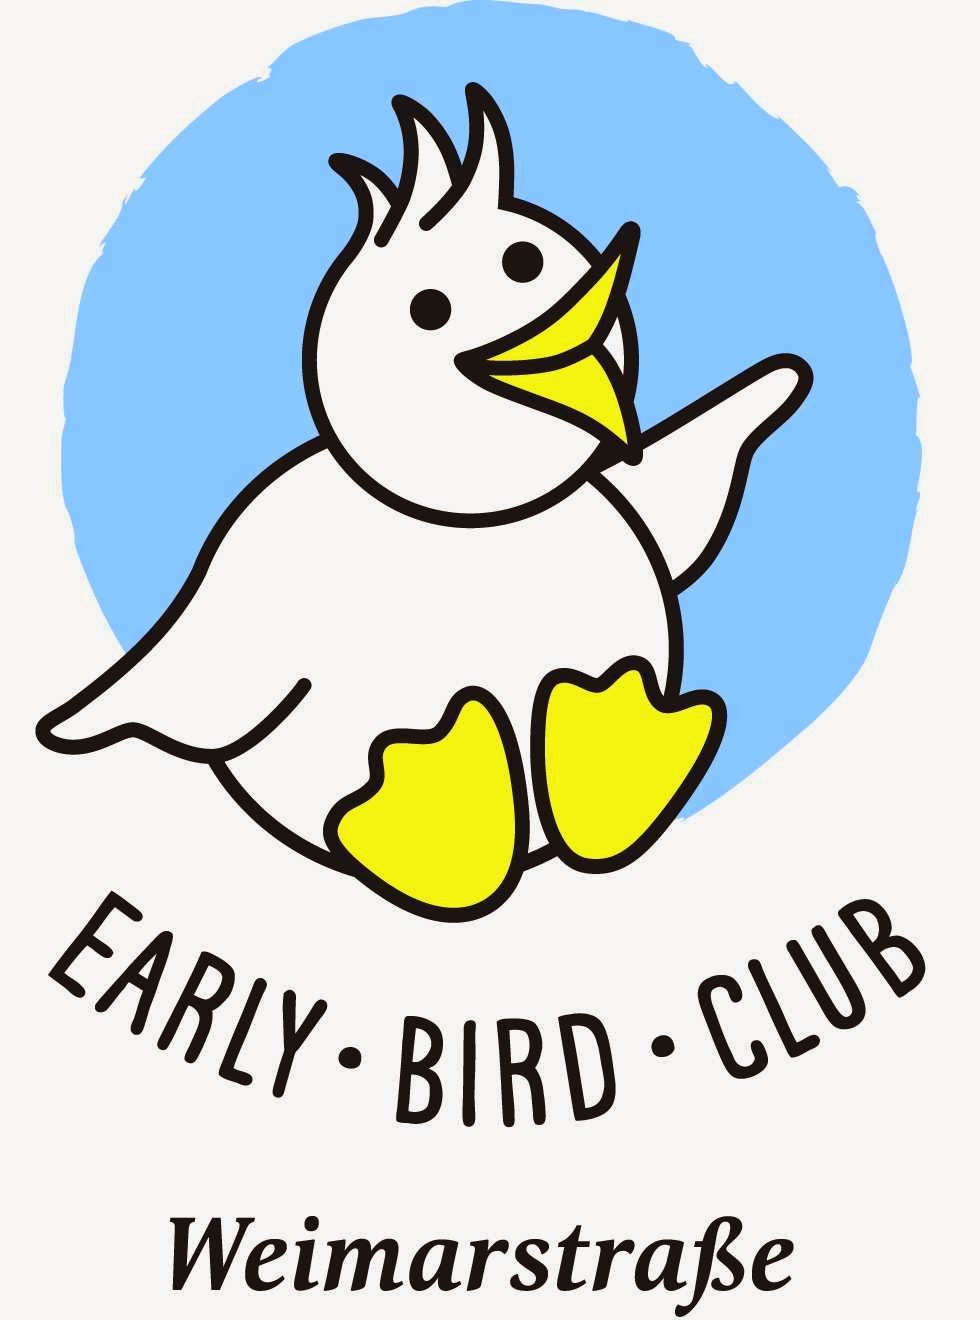 Bird club. Early Bird.